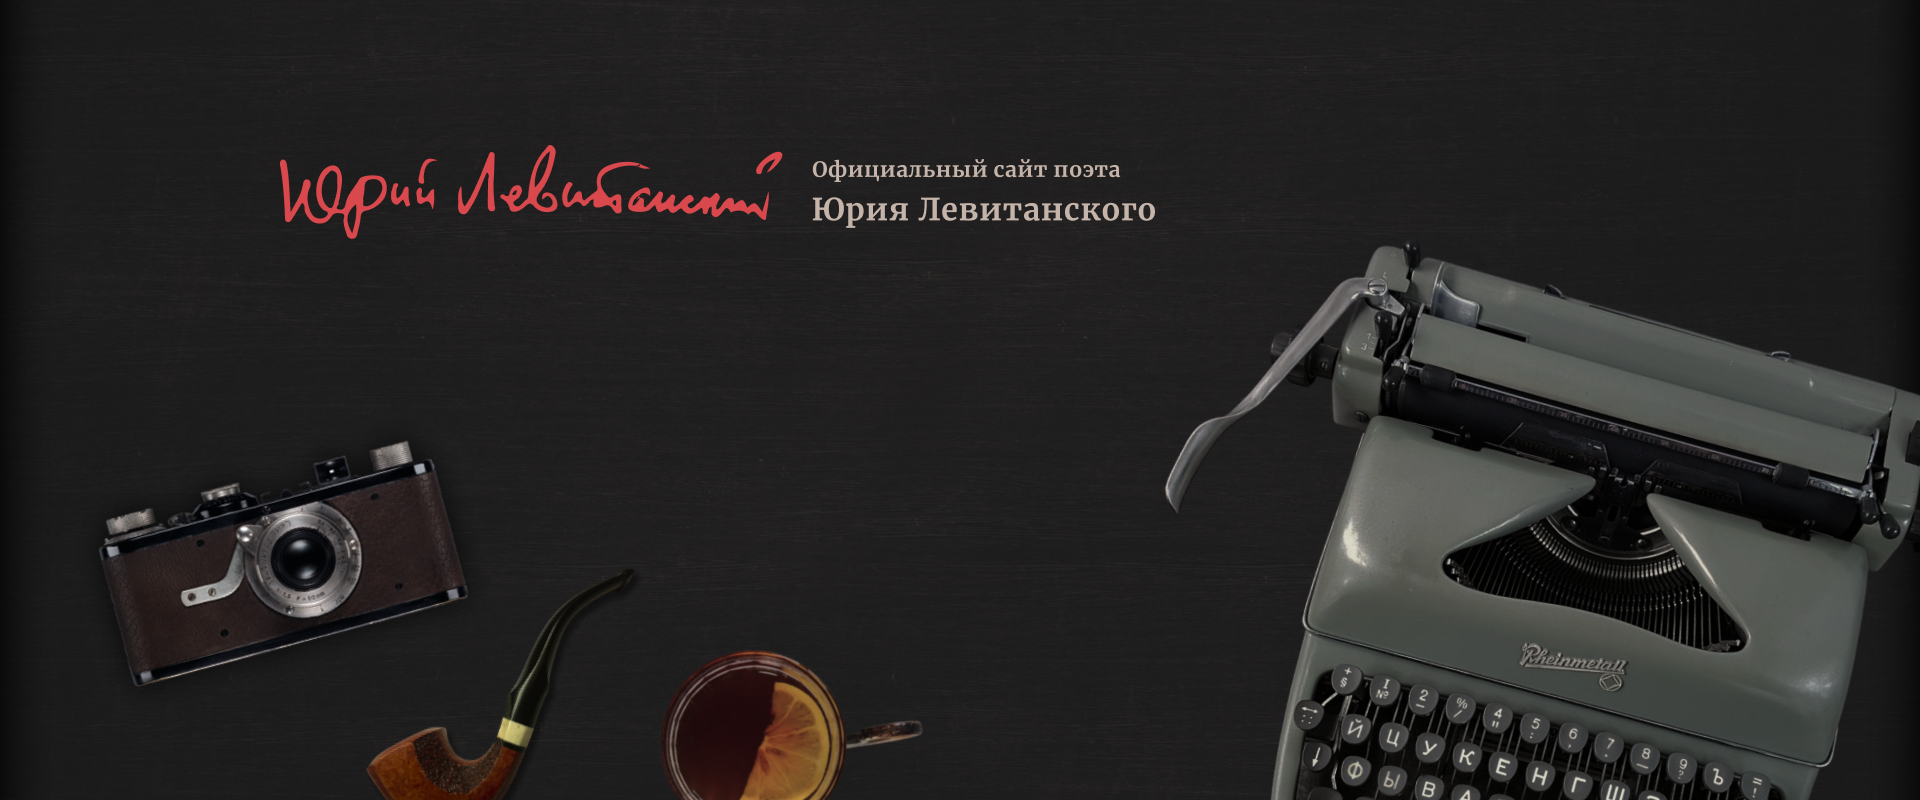 Сайт поэта Юрия Левитанского